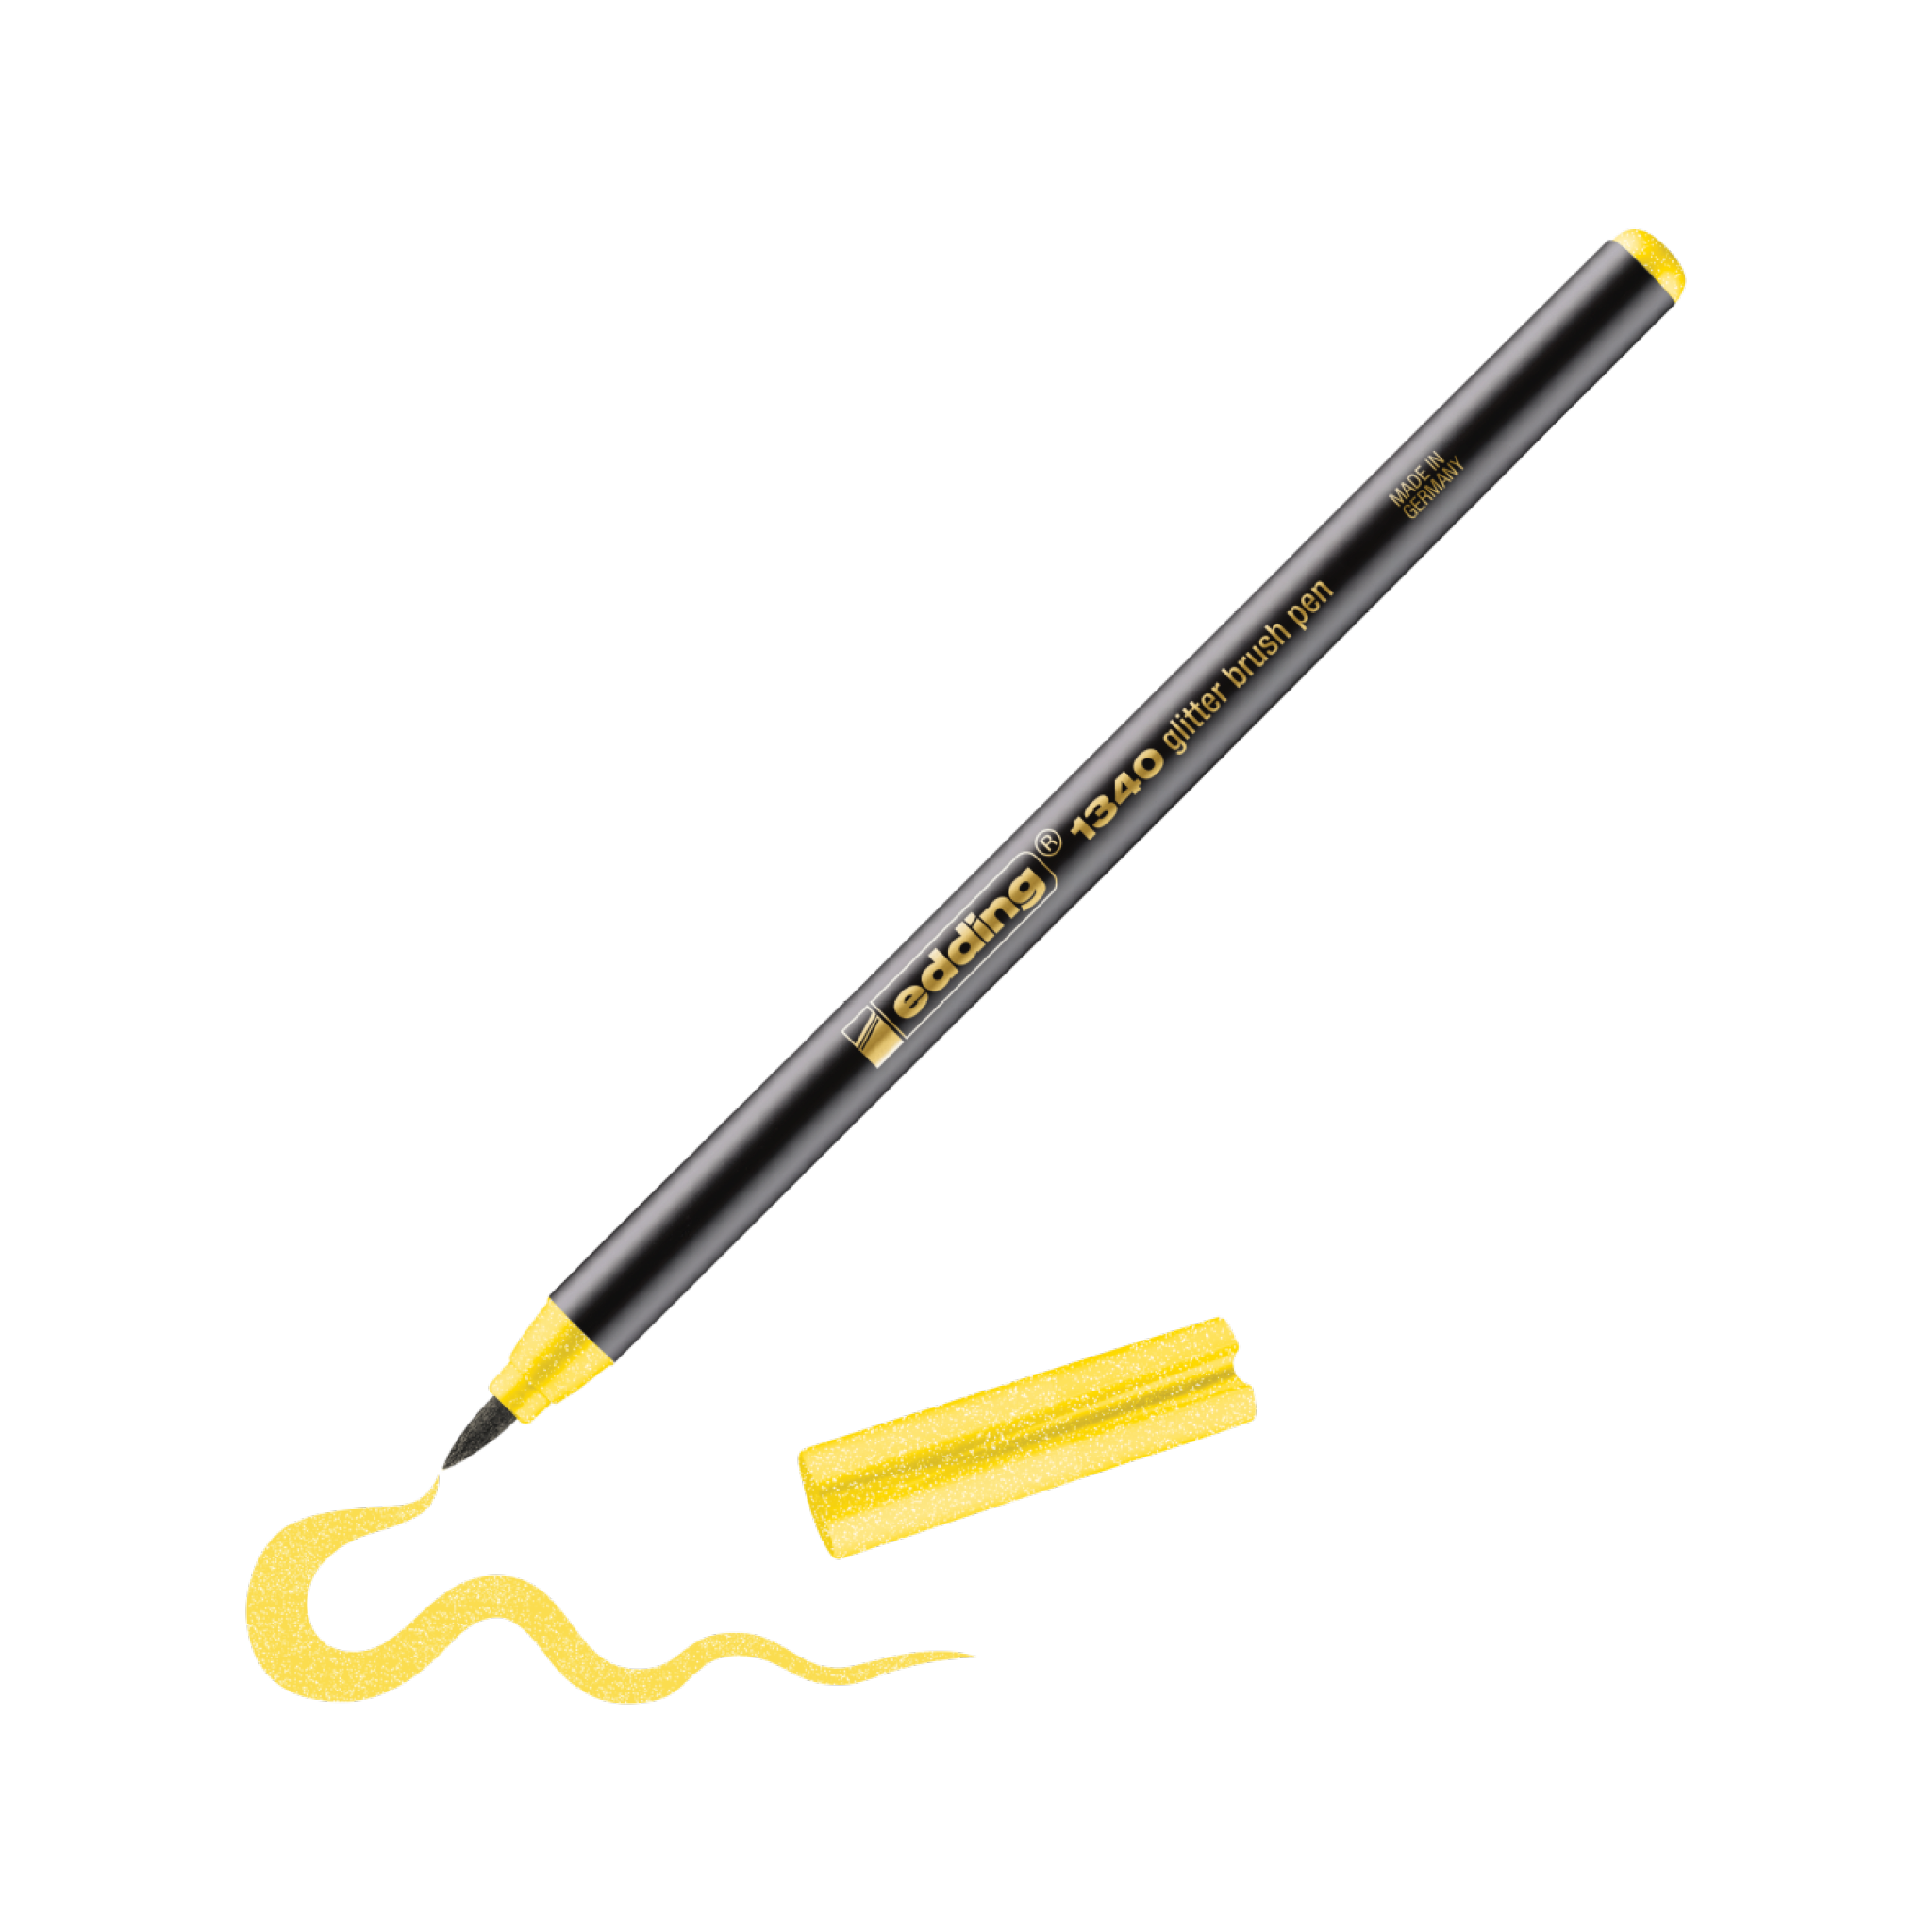 Ein schwarz-goldener edding 1340 Glitzer-Pinselstift mit flexibler Spitze, der eine verschnörkelte gelbe Linie auf weißem Hintergrund zeichnet. Der Text auf dem Stift lautet „creation 2.0 vielseitig